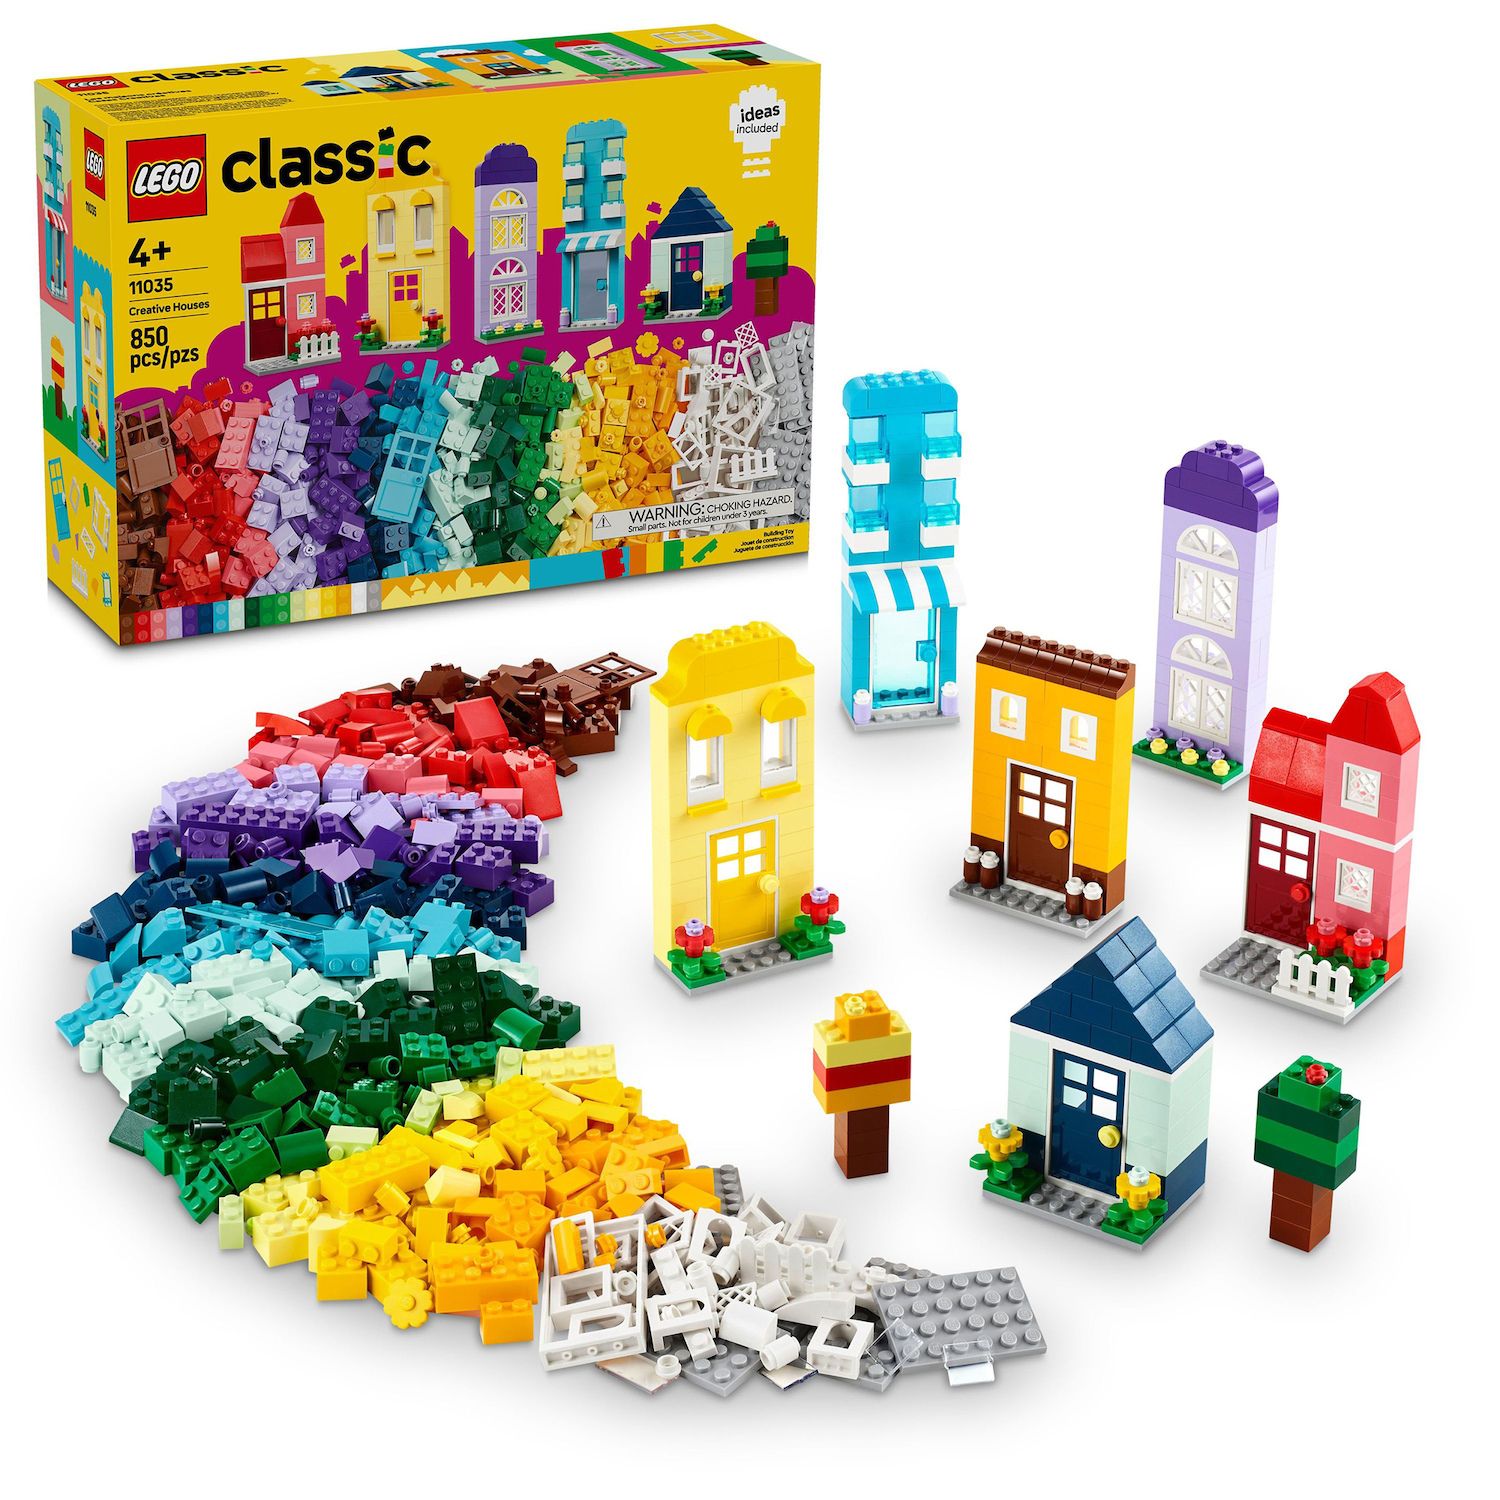 Lego Duplo My First Organic Market Toddler Toys 10983 : Target